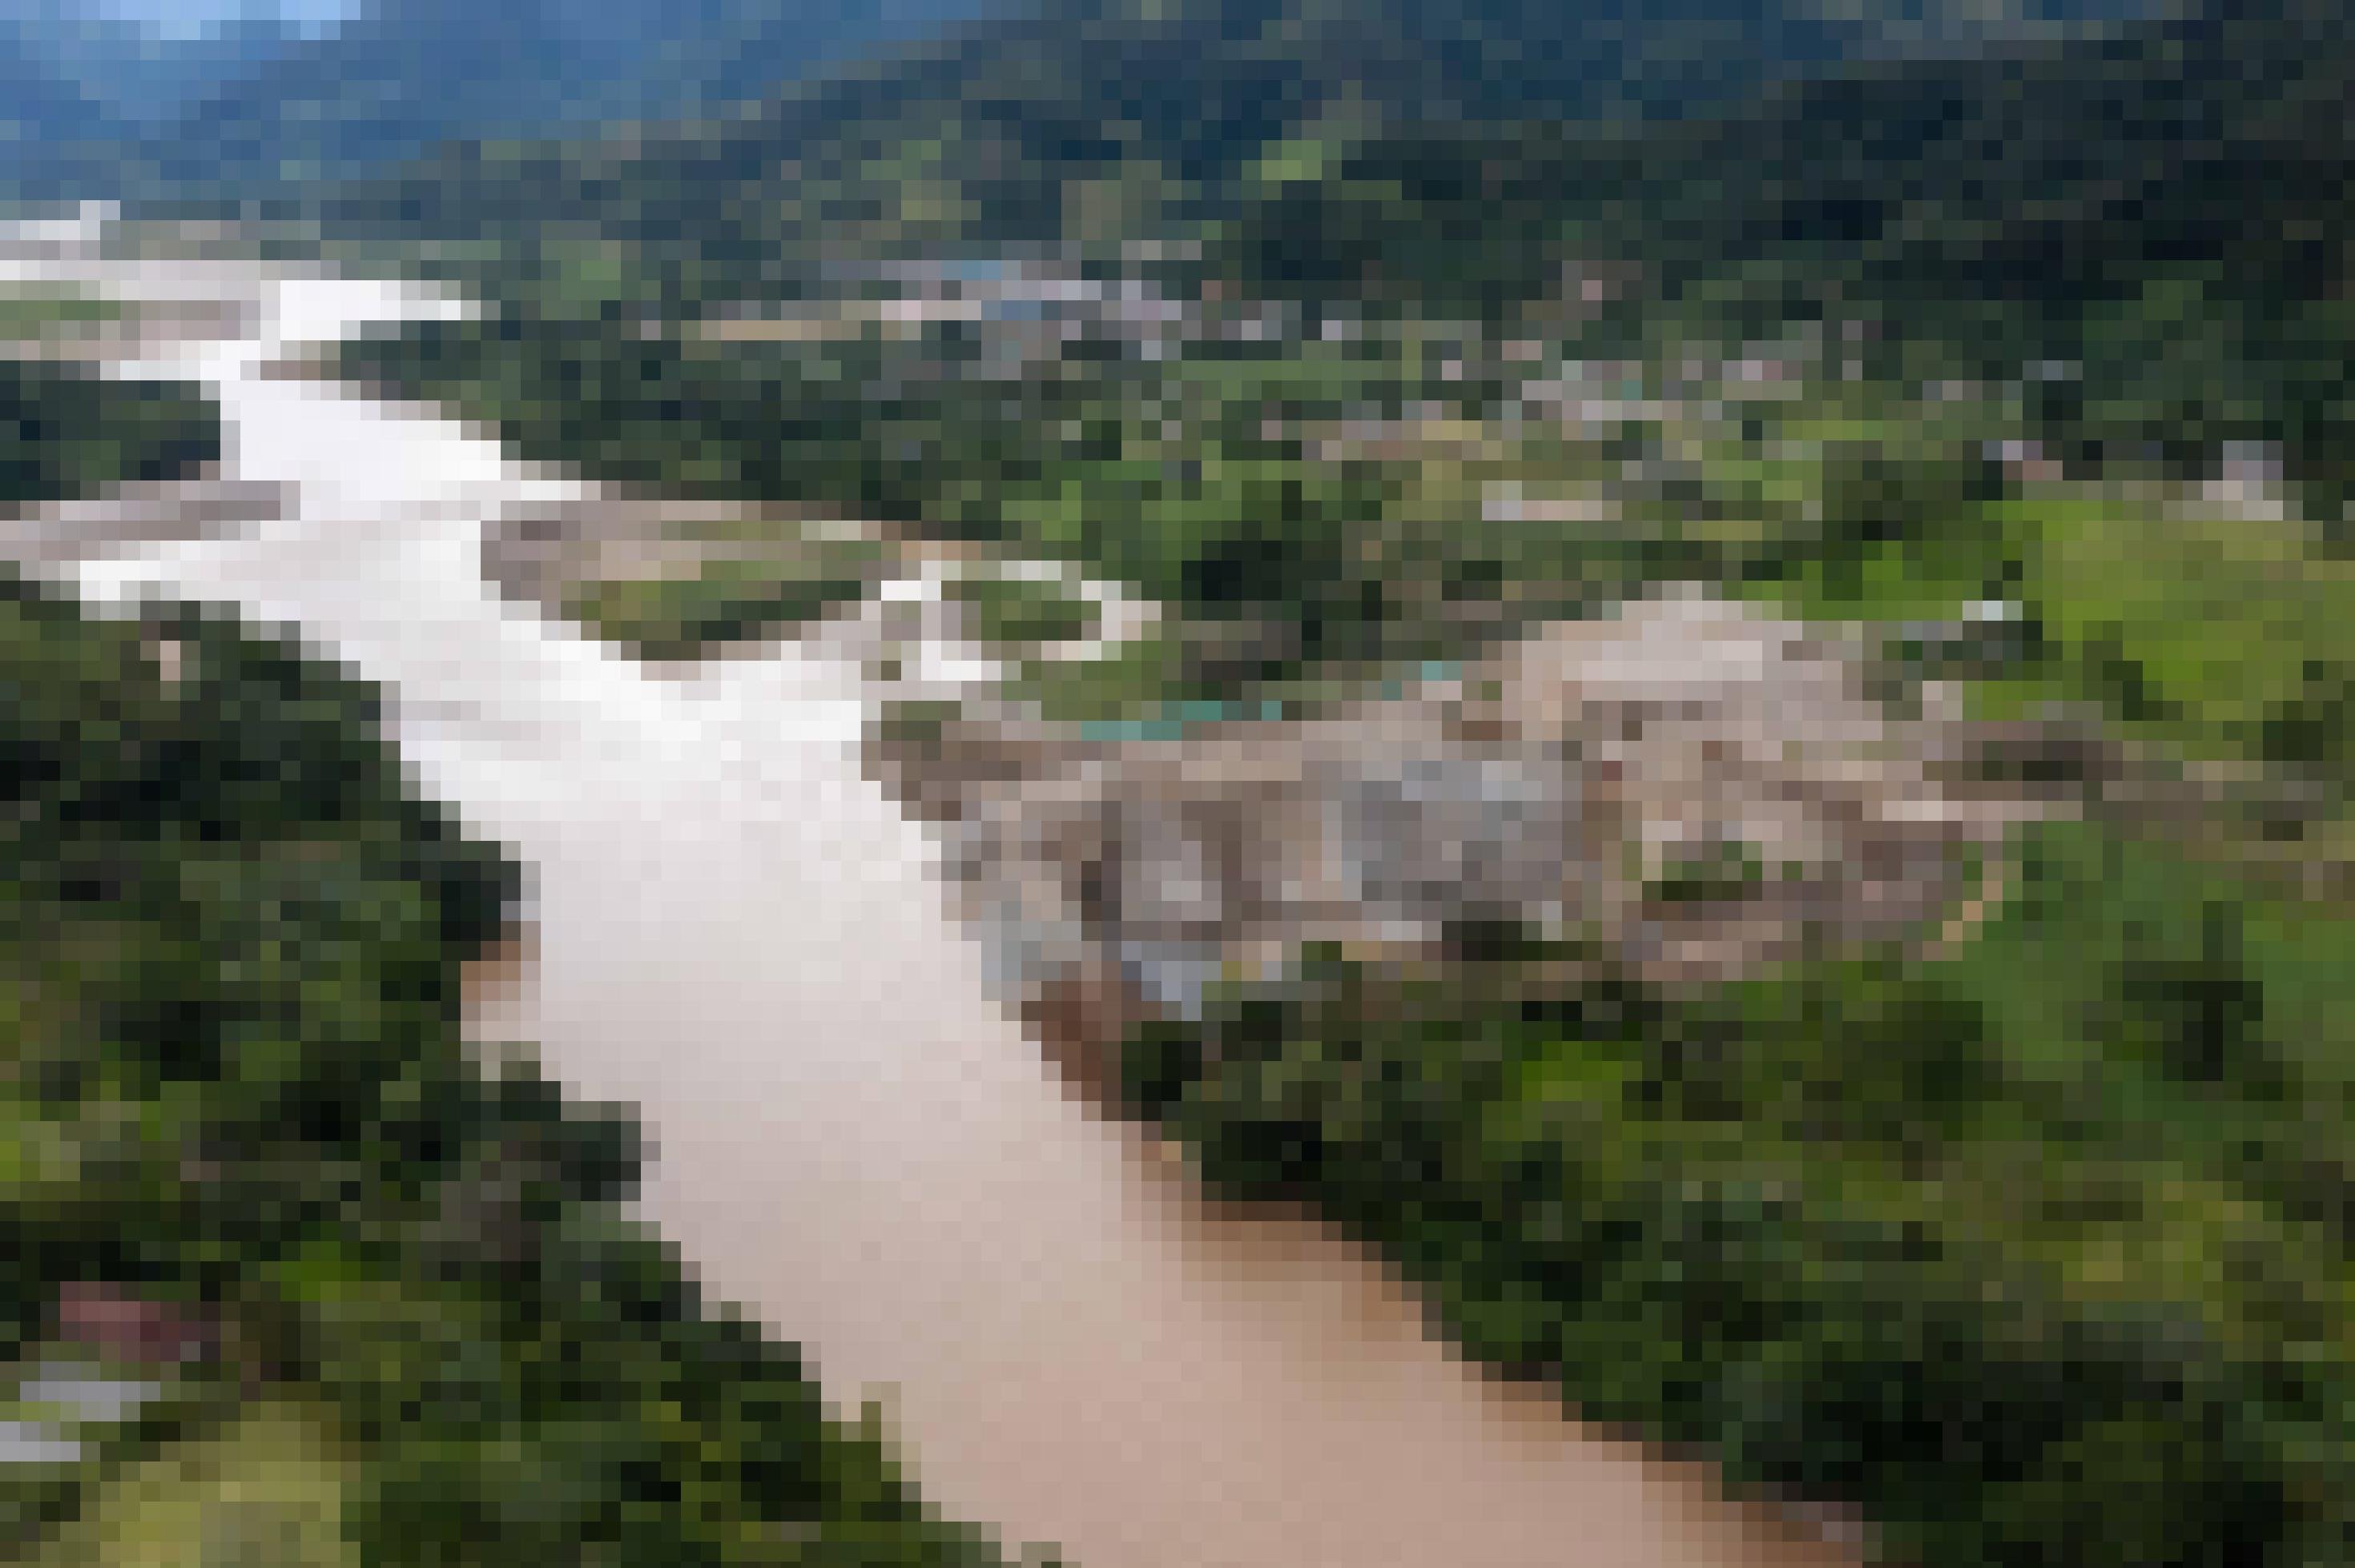 Luftbild zeigt eine illegala Goldmine nahe Panguintza/Ecuador